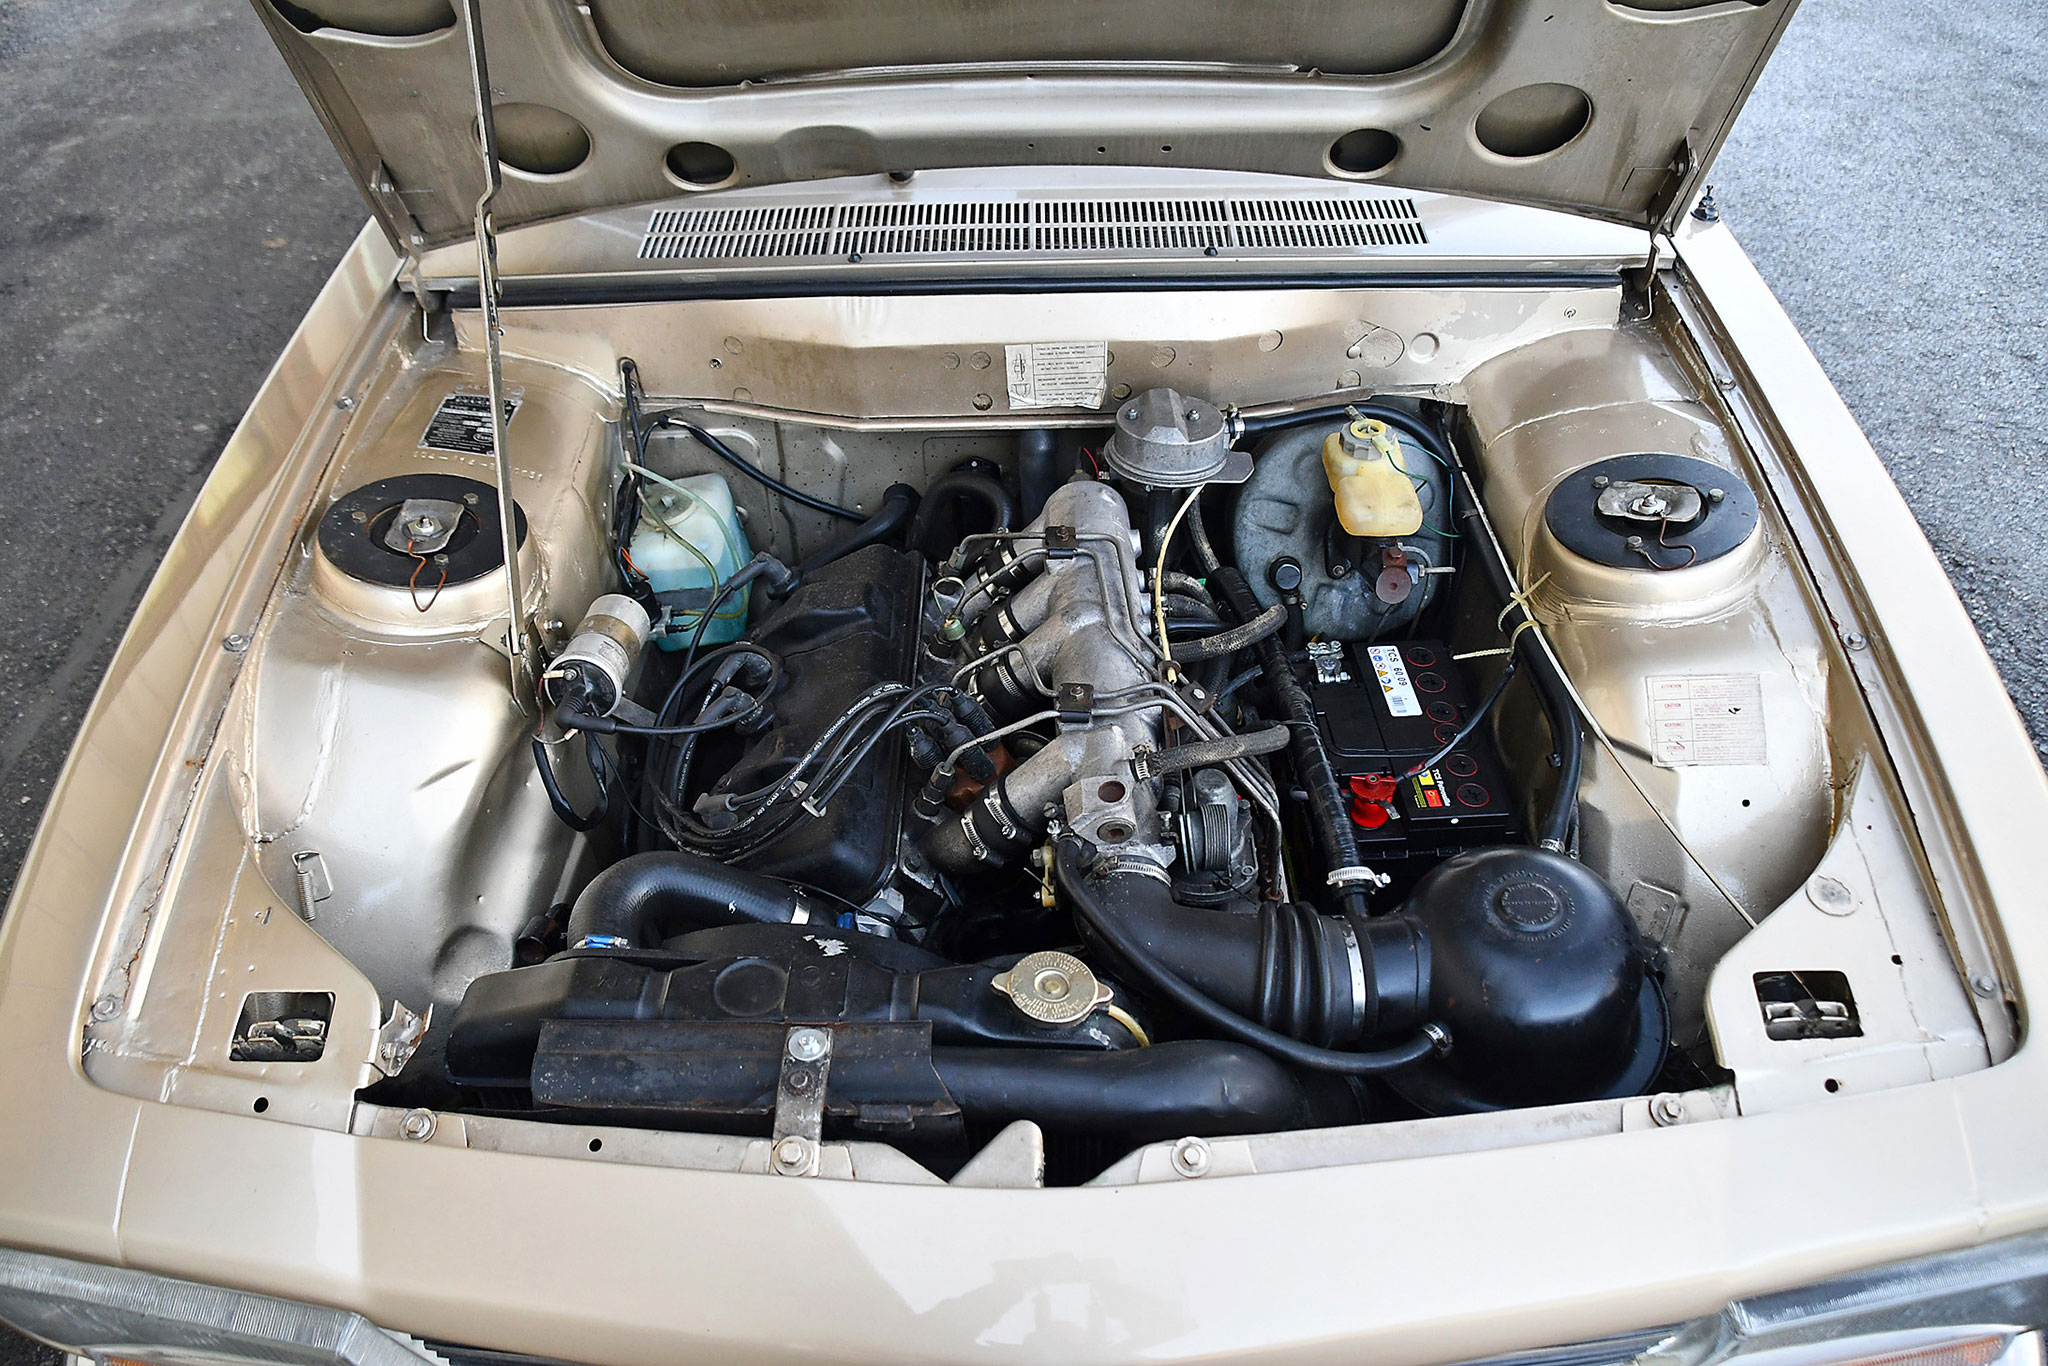 1978 Peugeot 504 TI automatique – moteur de 1970 cm³ en parfait état malgré ces 266 000 kilomètres.